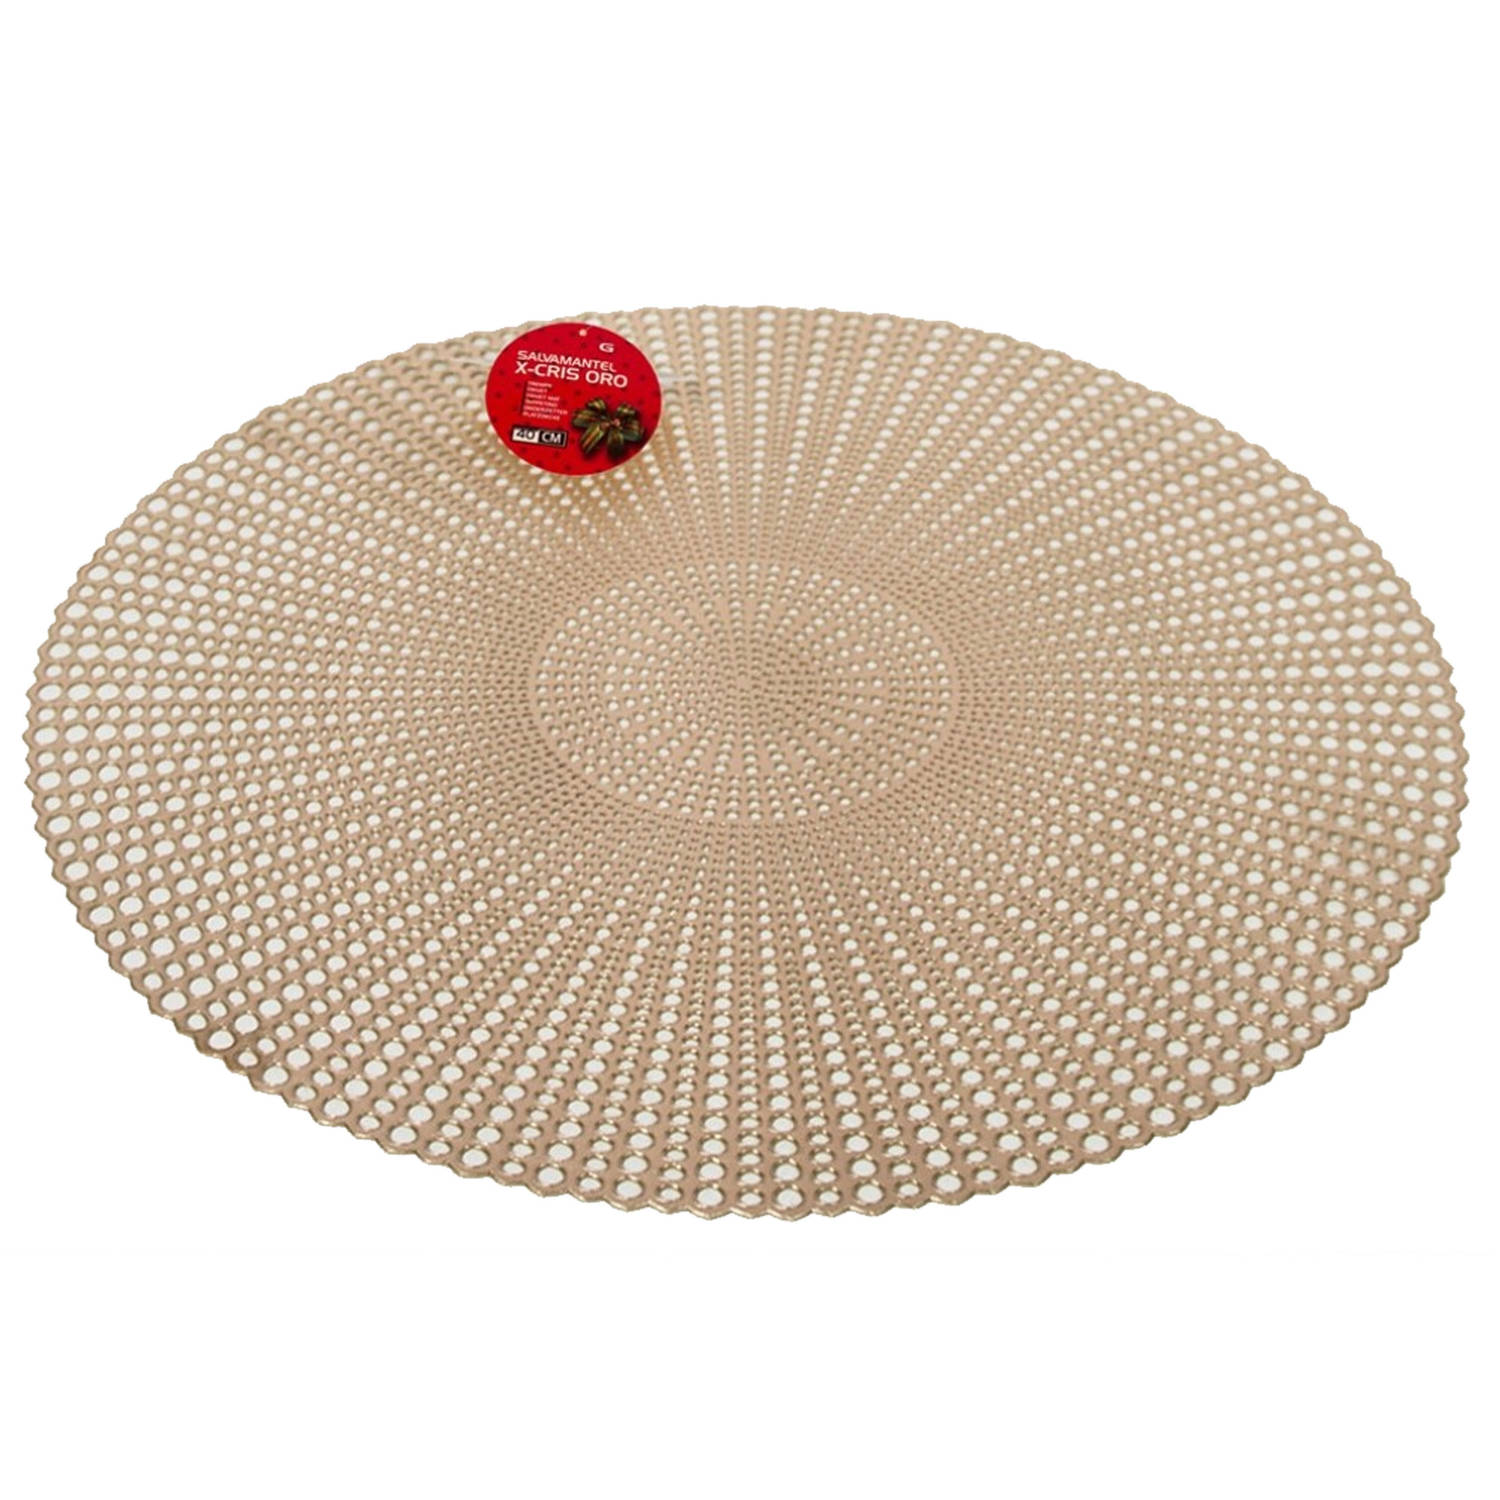 Ronde diner tafel placemats goud-kleur met diameter 40 cm - Kunststof - Voor o.a. Kerstmis/bruiloft/dagelijks